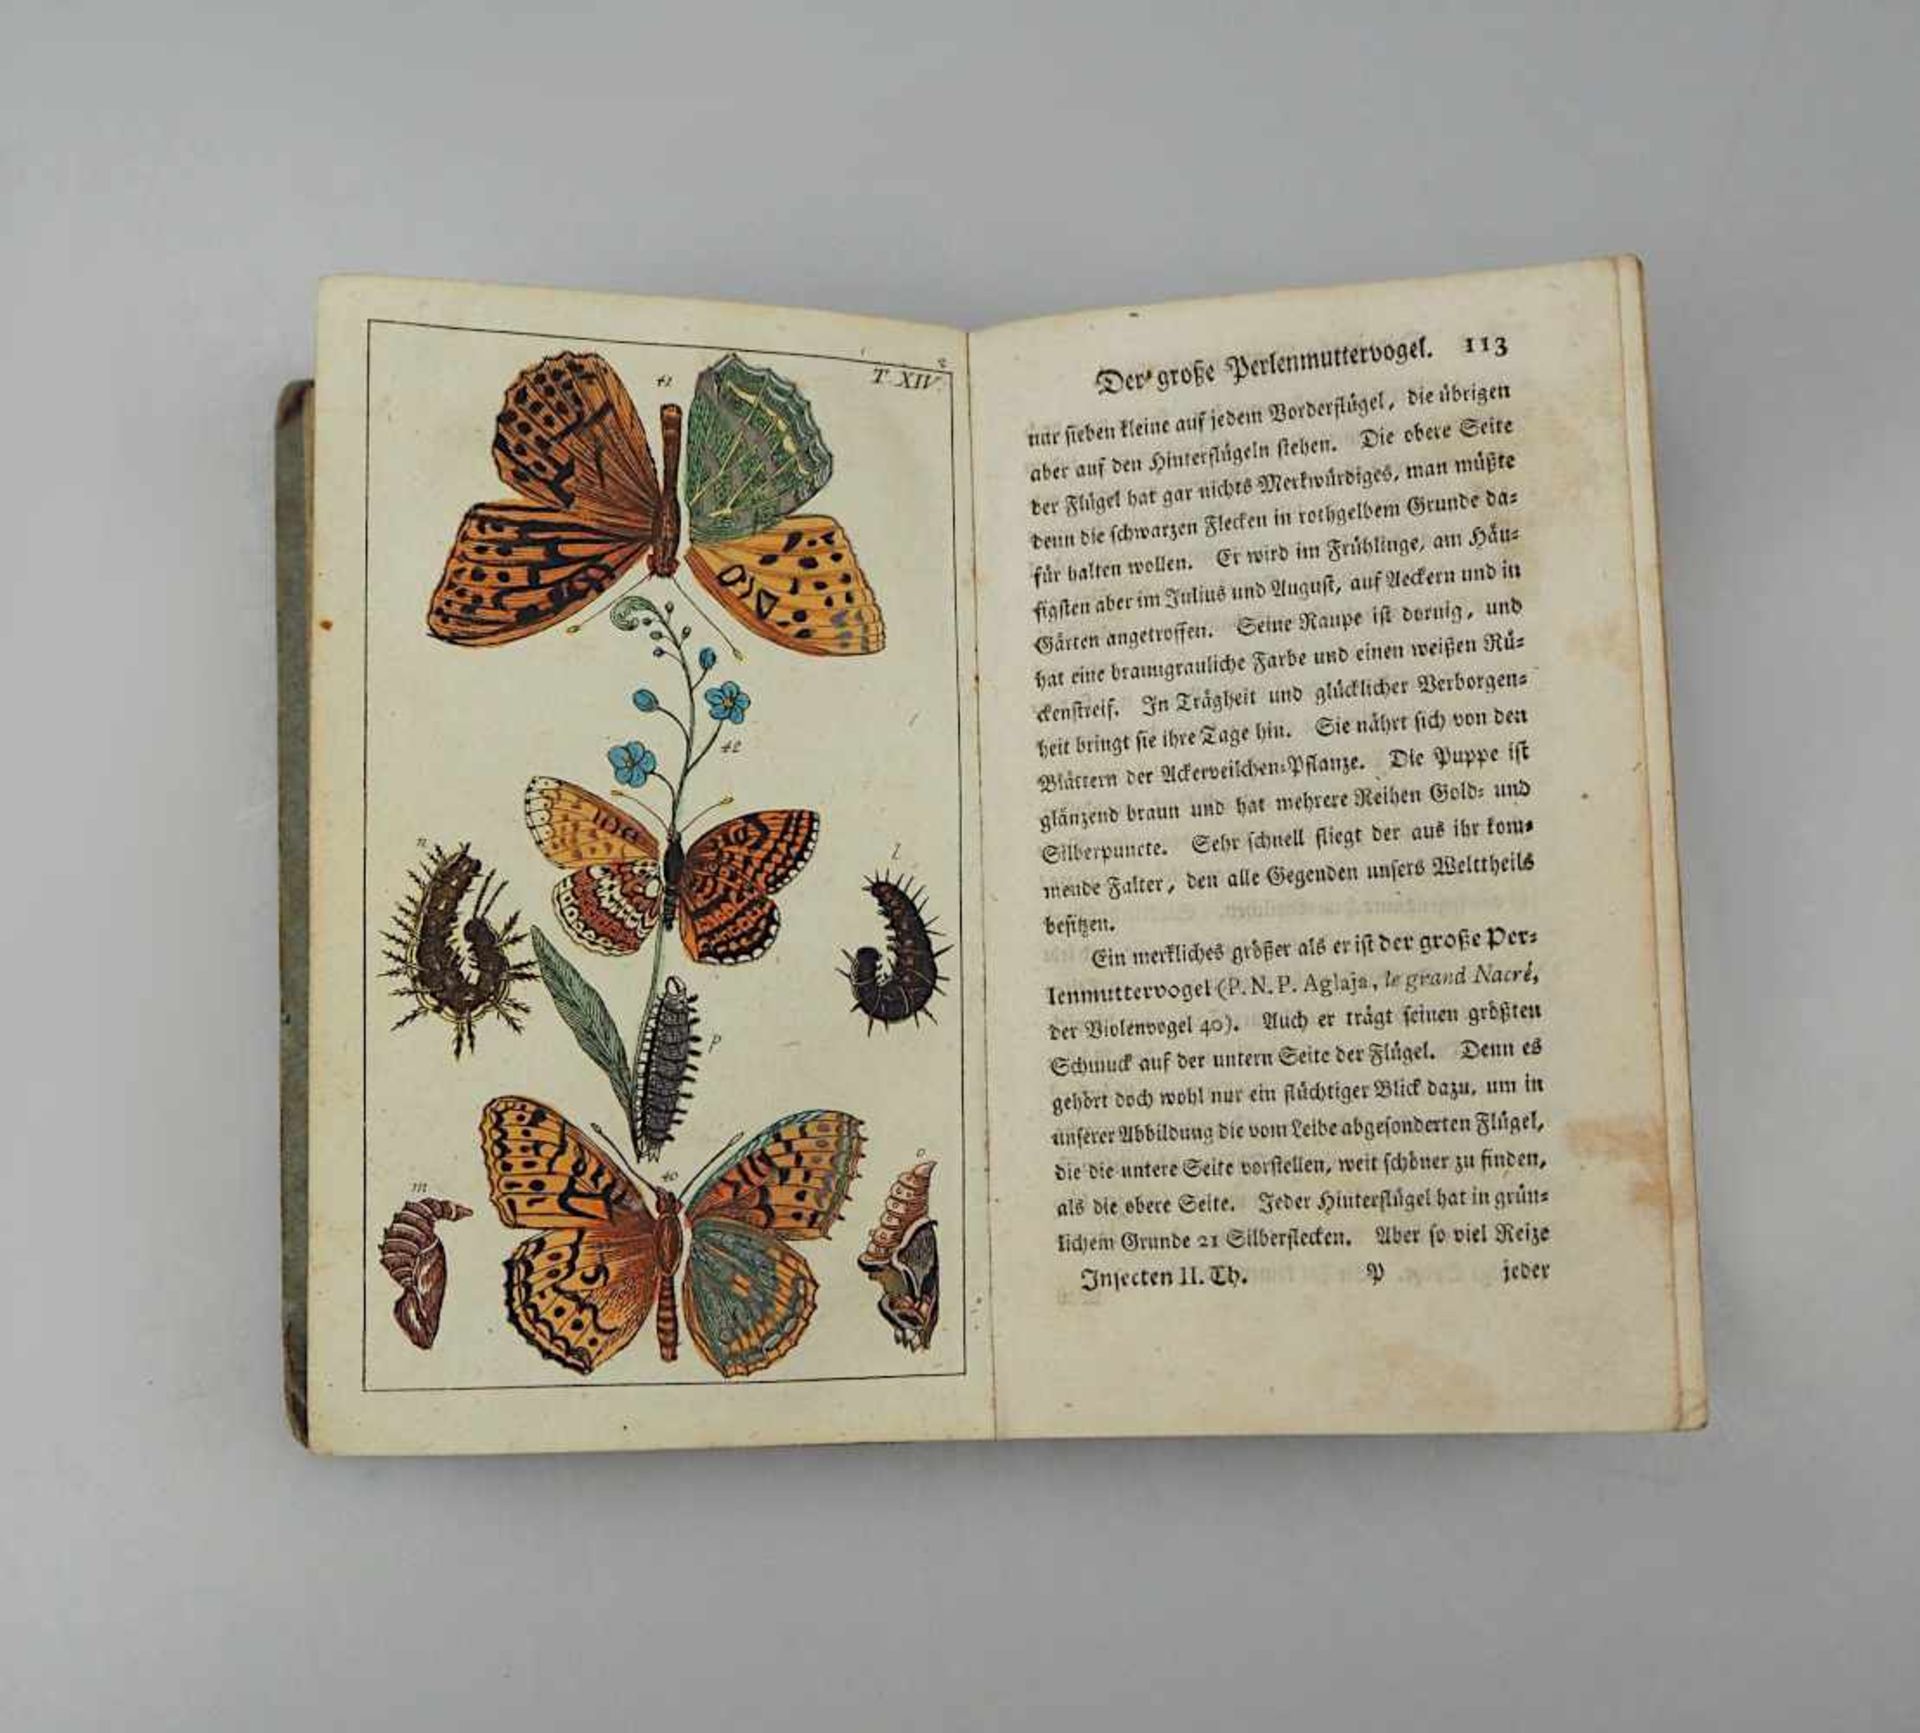 1 Buch "Unterhaltung aus der Naturgeschichte" Augsburg 1797 herausgegeben von der Mark Engelbrech